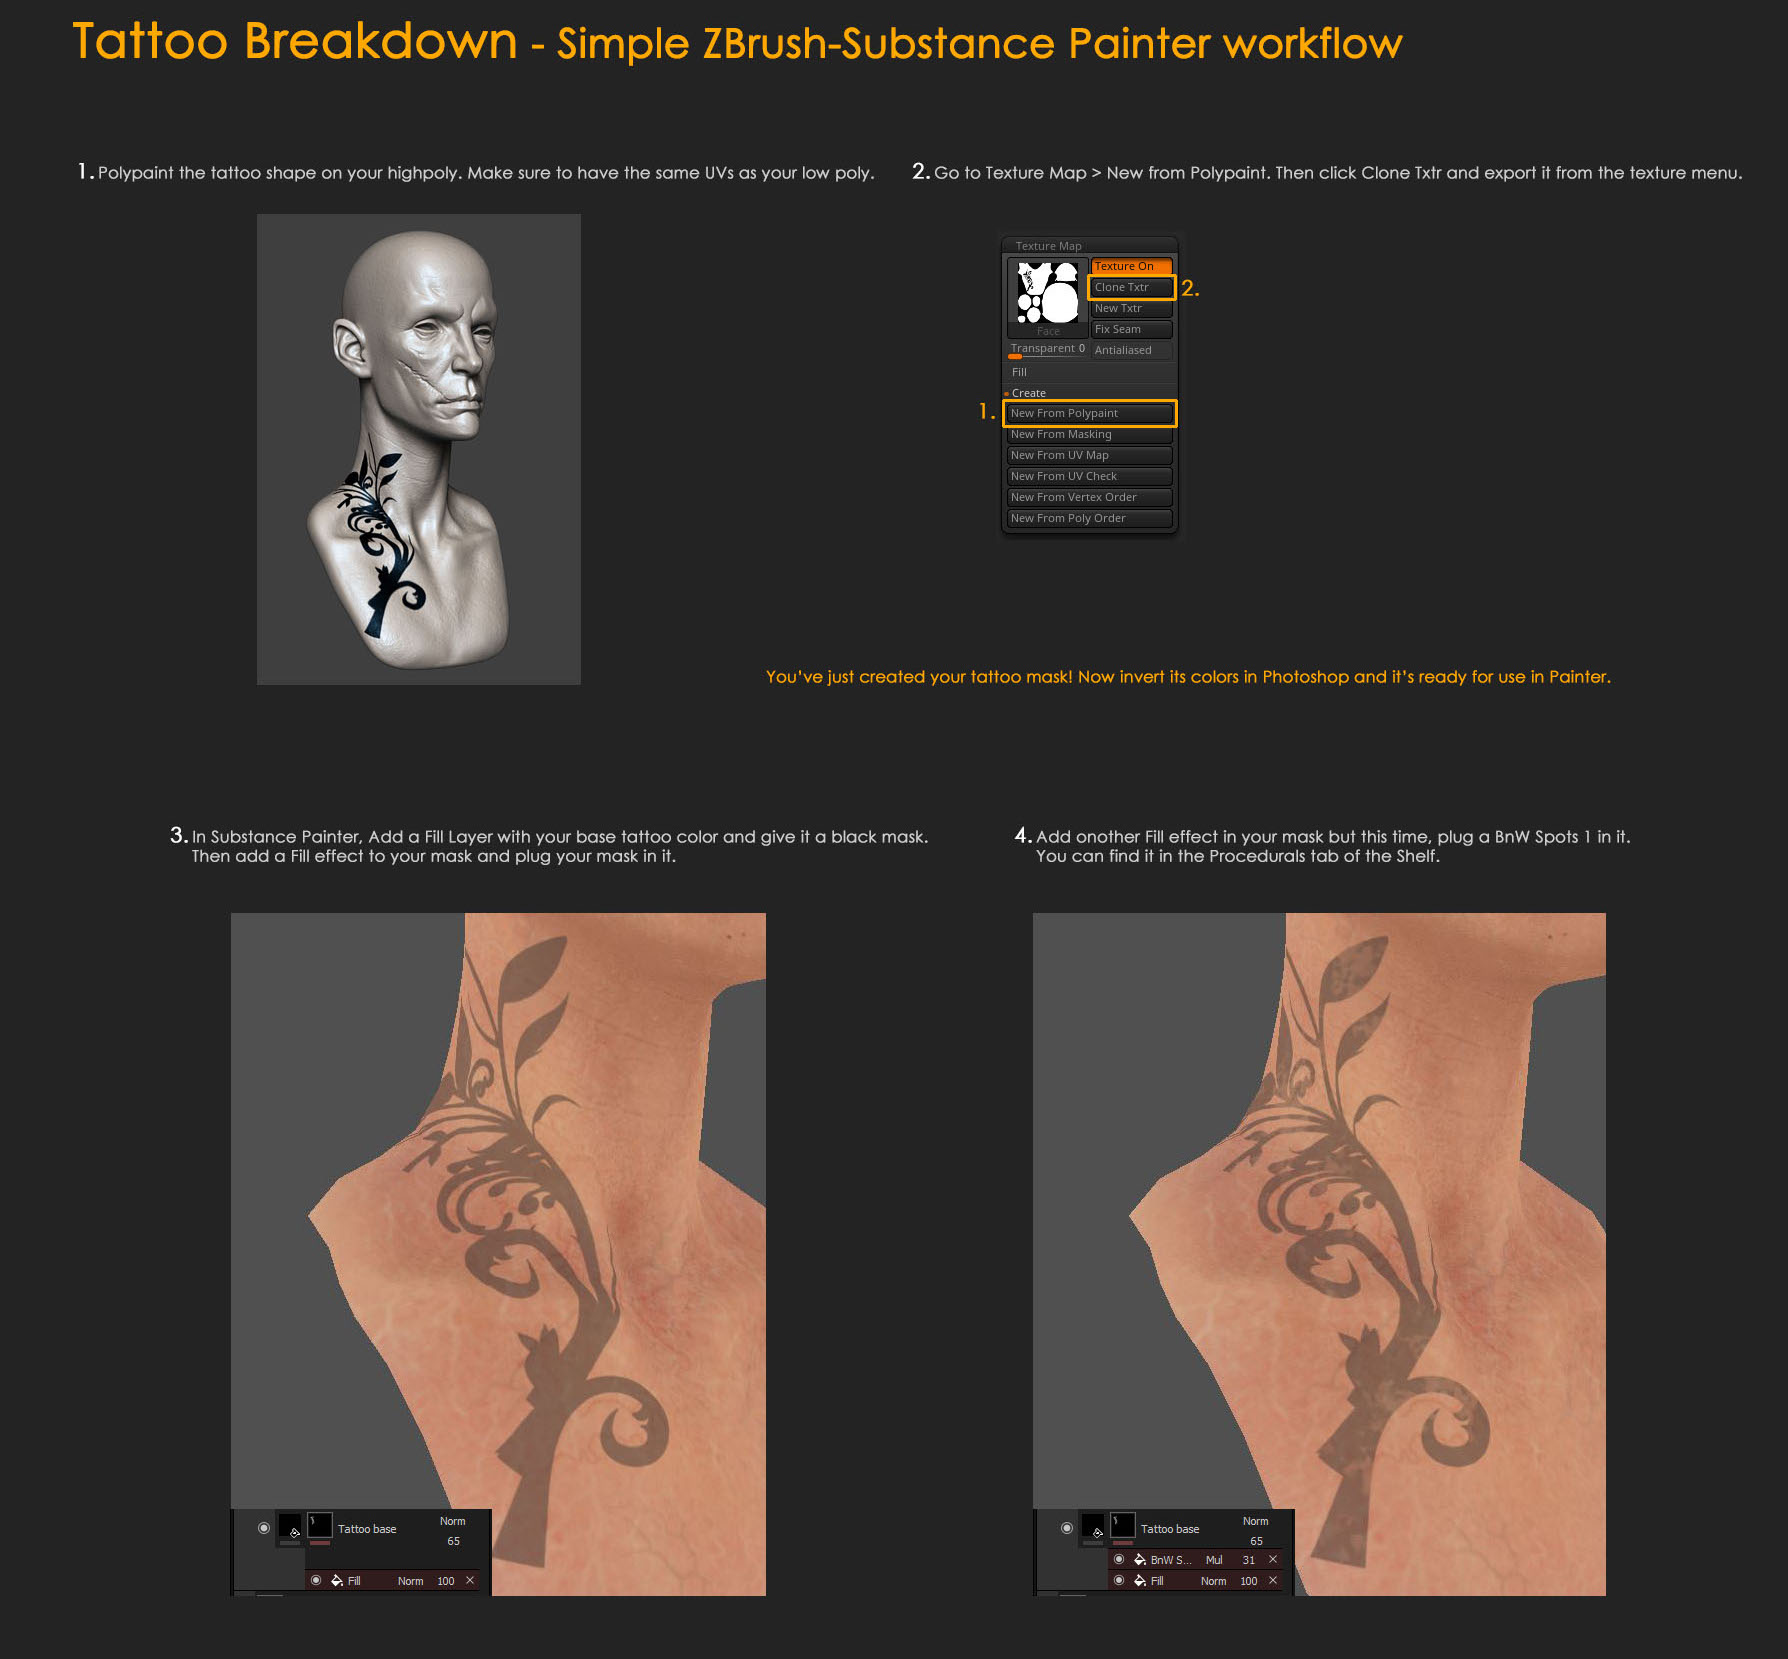 Fred Fields - Tattoo Artist - Ink Well Tattoo | LinkedIn